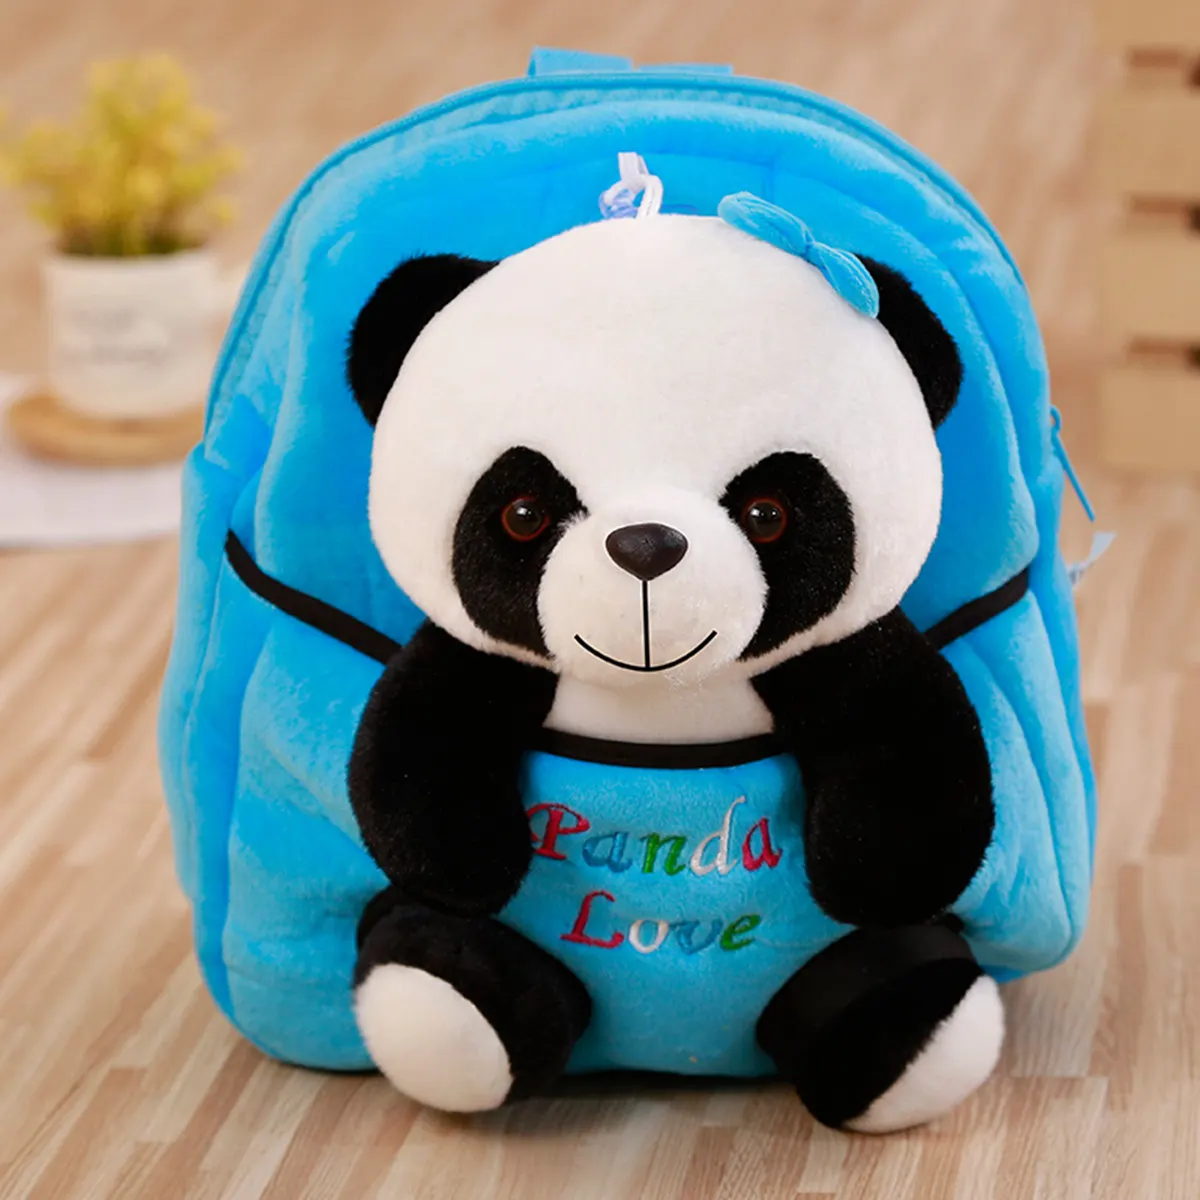 1 шт. Детский Рюкзак Kawaii Panda, сумки, маленькие плюшевые игрушки для детей, студентов, для девочки, мальчика, ребёнка, мягкая плюшевая кукла, подарок на день рождения